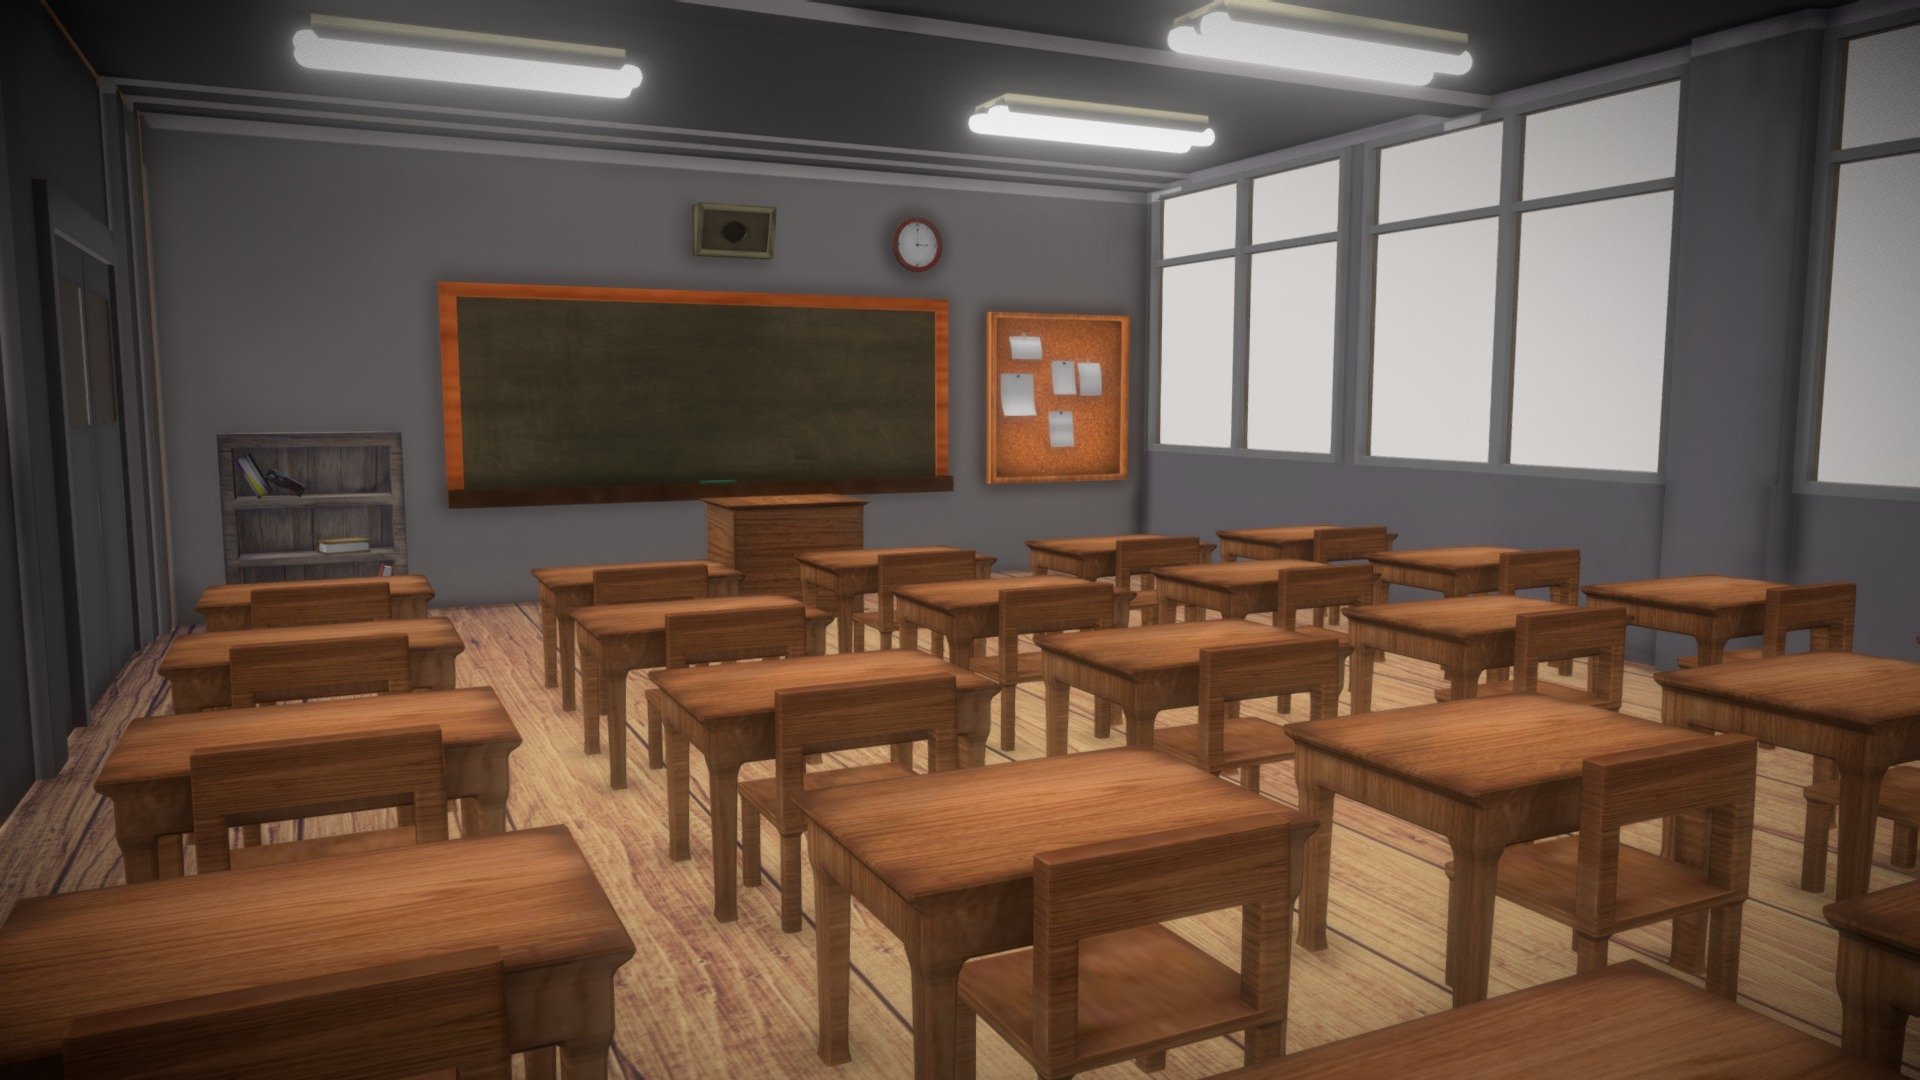 Classroom Download Free 3d Model By Viamuu [ee73448] Sketchfab